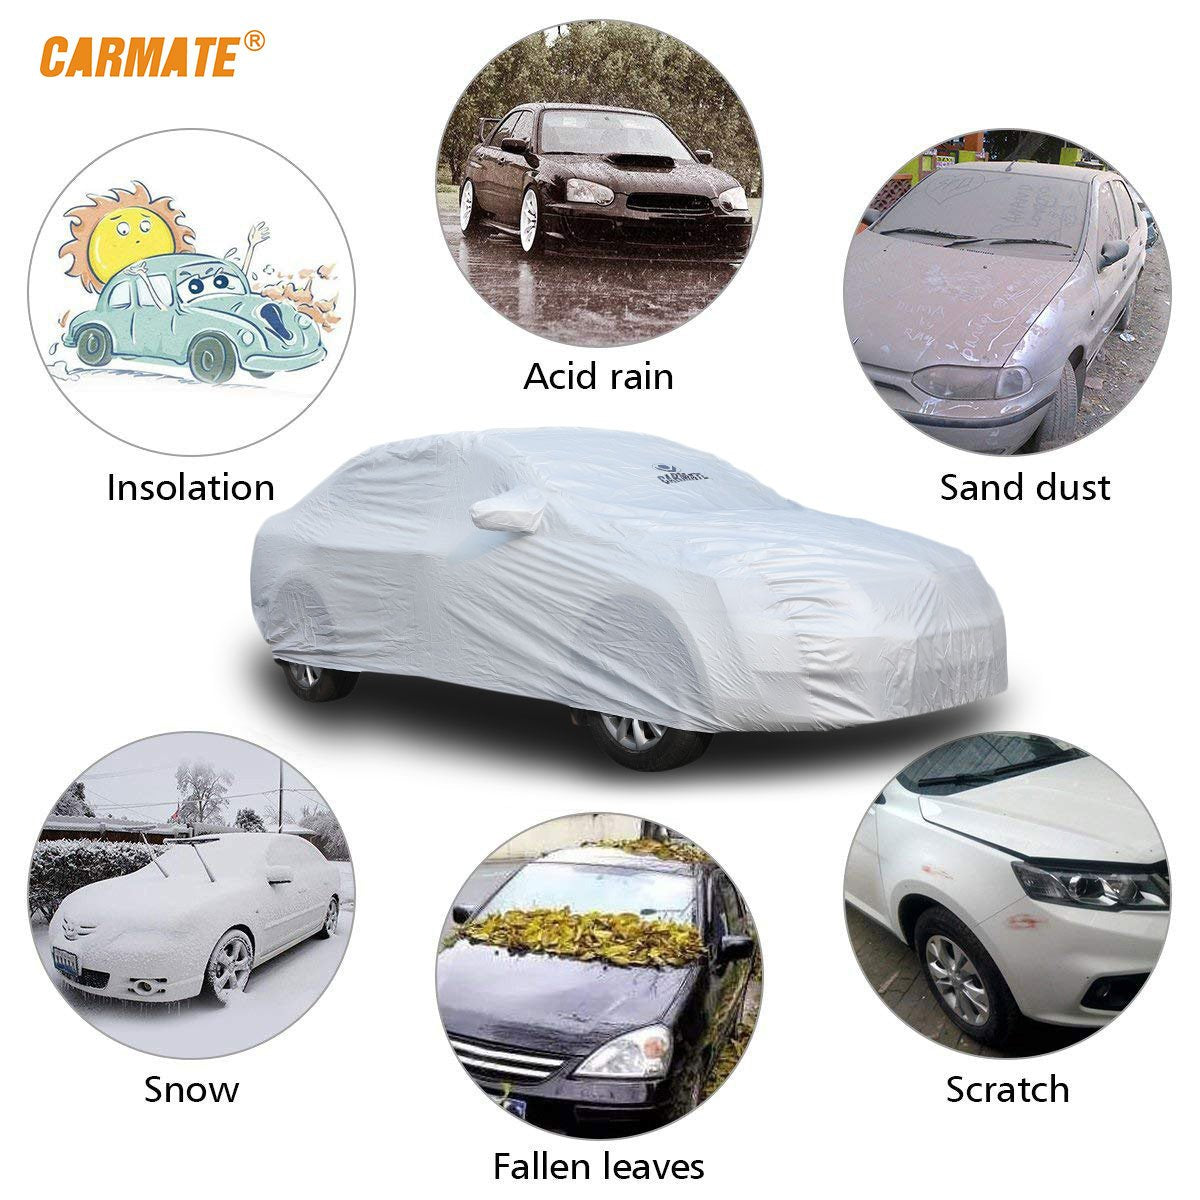 Carmate Premium Car Body Cover Silver Matty (Silver) for  Honda - Wrv - CARMATE®